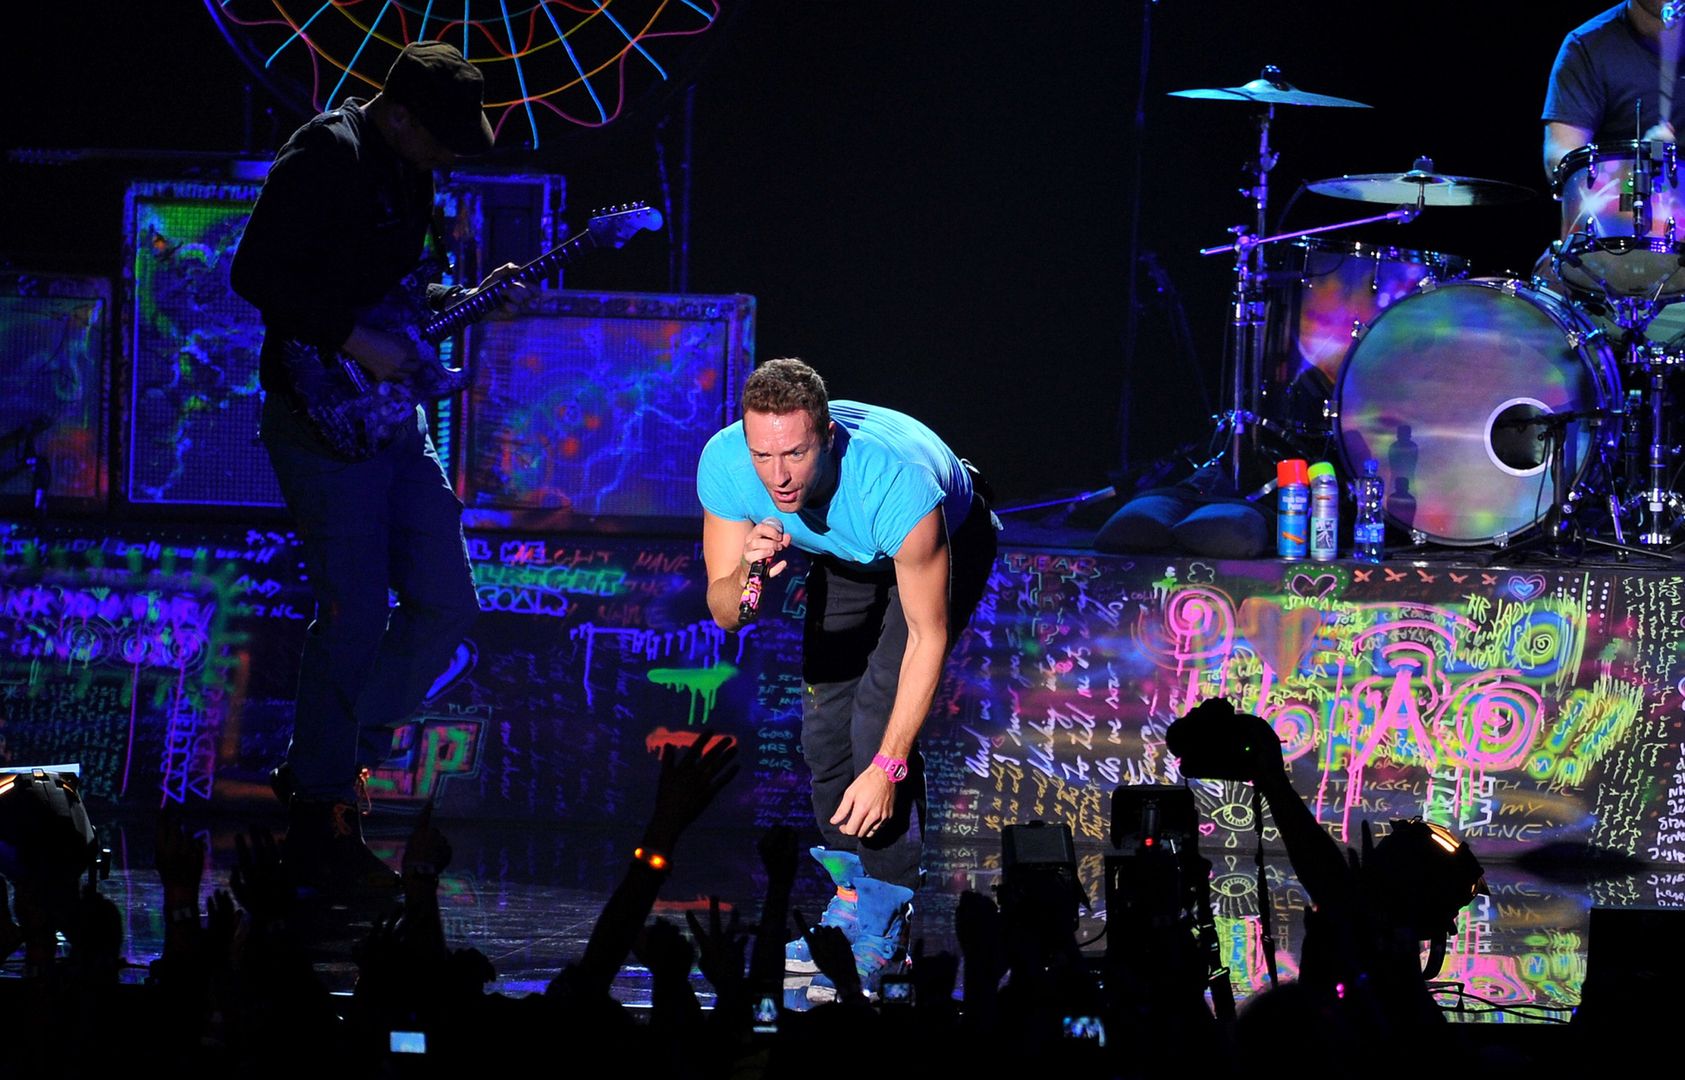 Duża zmiana w życiu lidera Coldplay. Gwyneth Paltrow udzieliła mu błogosławieństwa